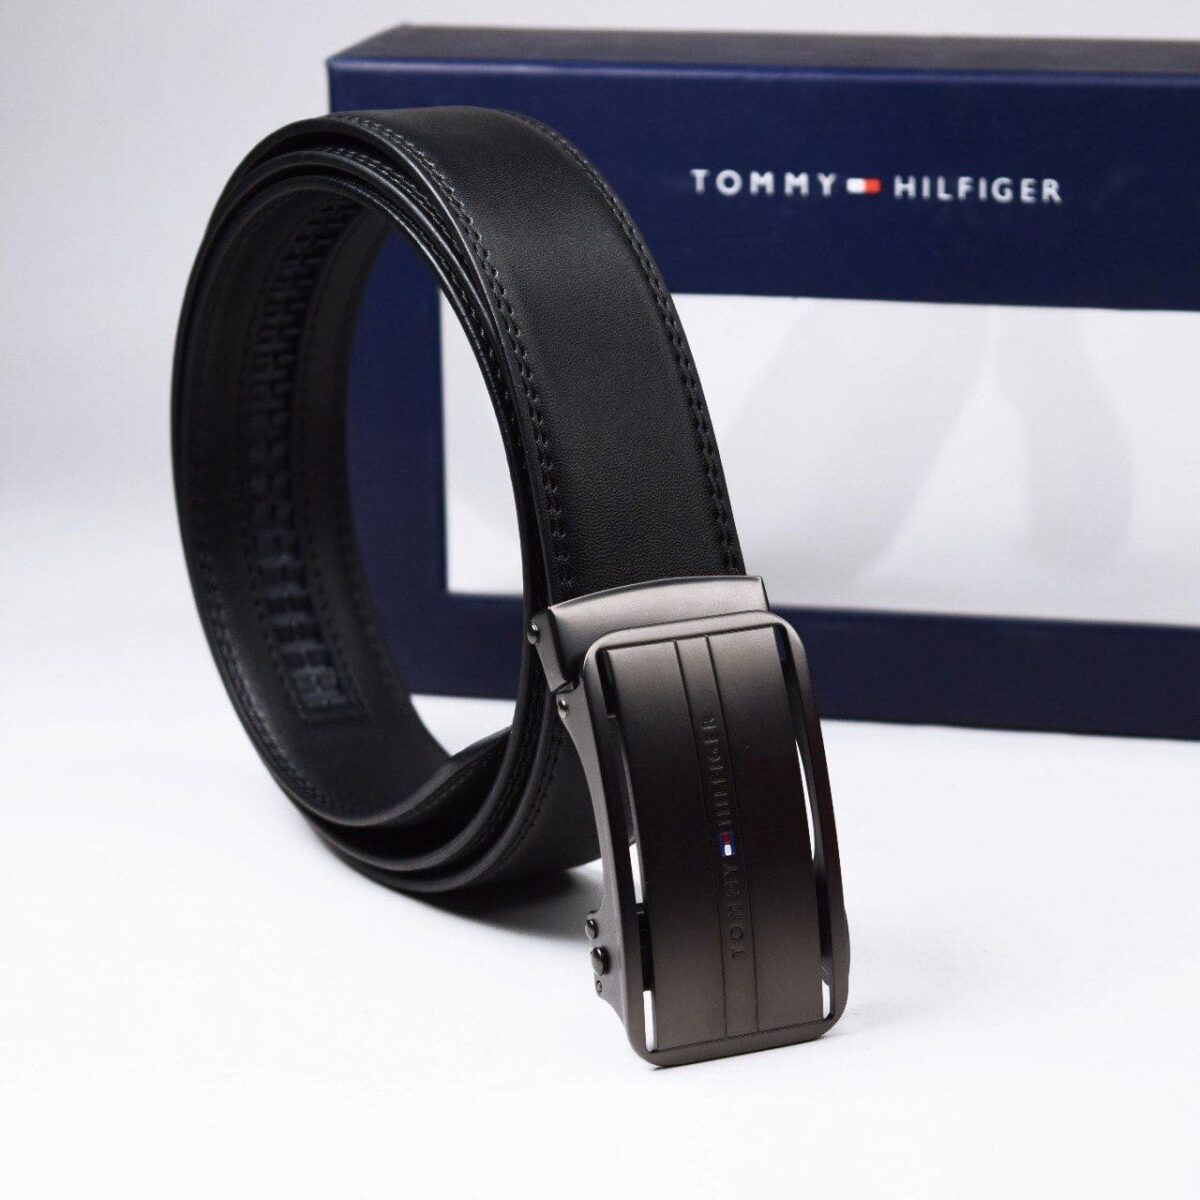 original-belt-tommy-hilfiger-in-egypt-for-men-black-leather-color-TH